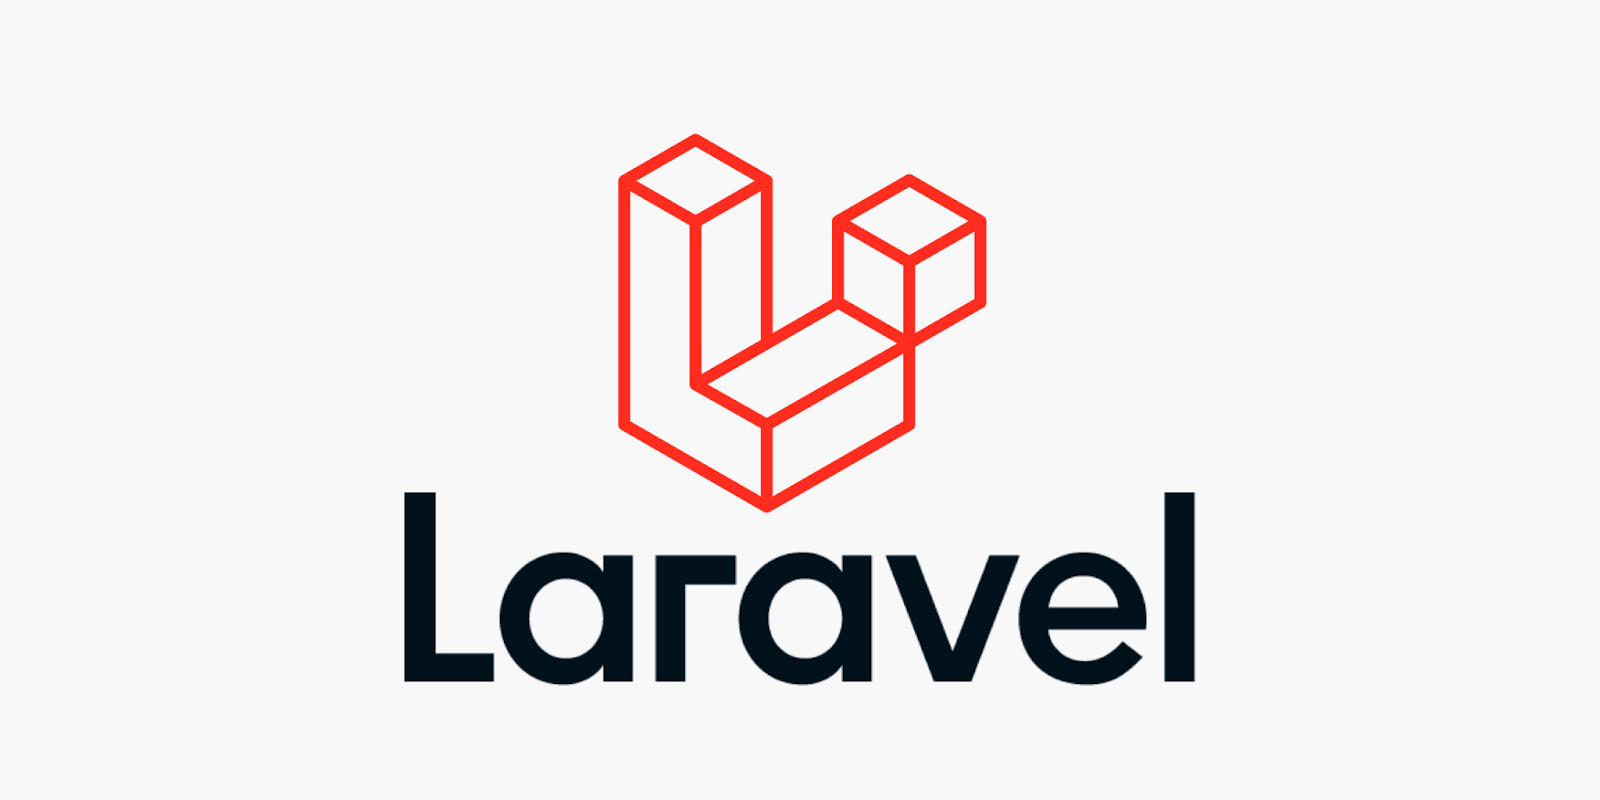 Das Laravel-Logo mit dem Wort in Schwarz und dem Logo in Rot über dem Laravel-Wort.